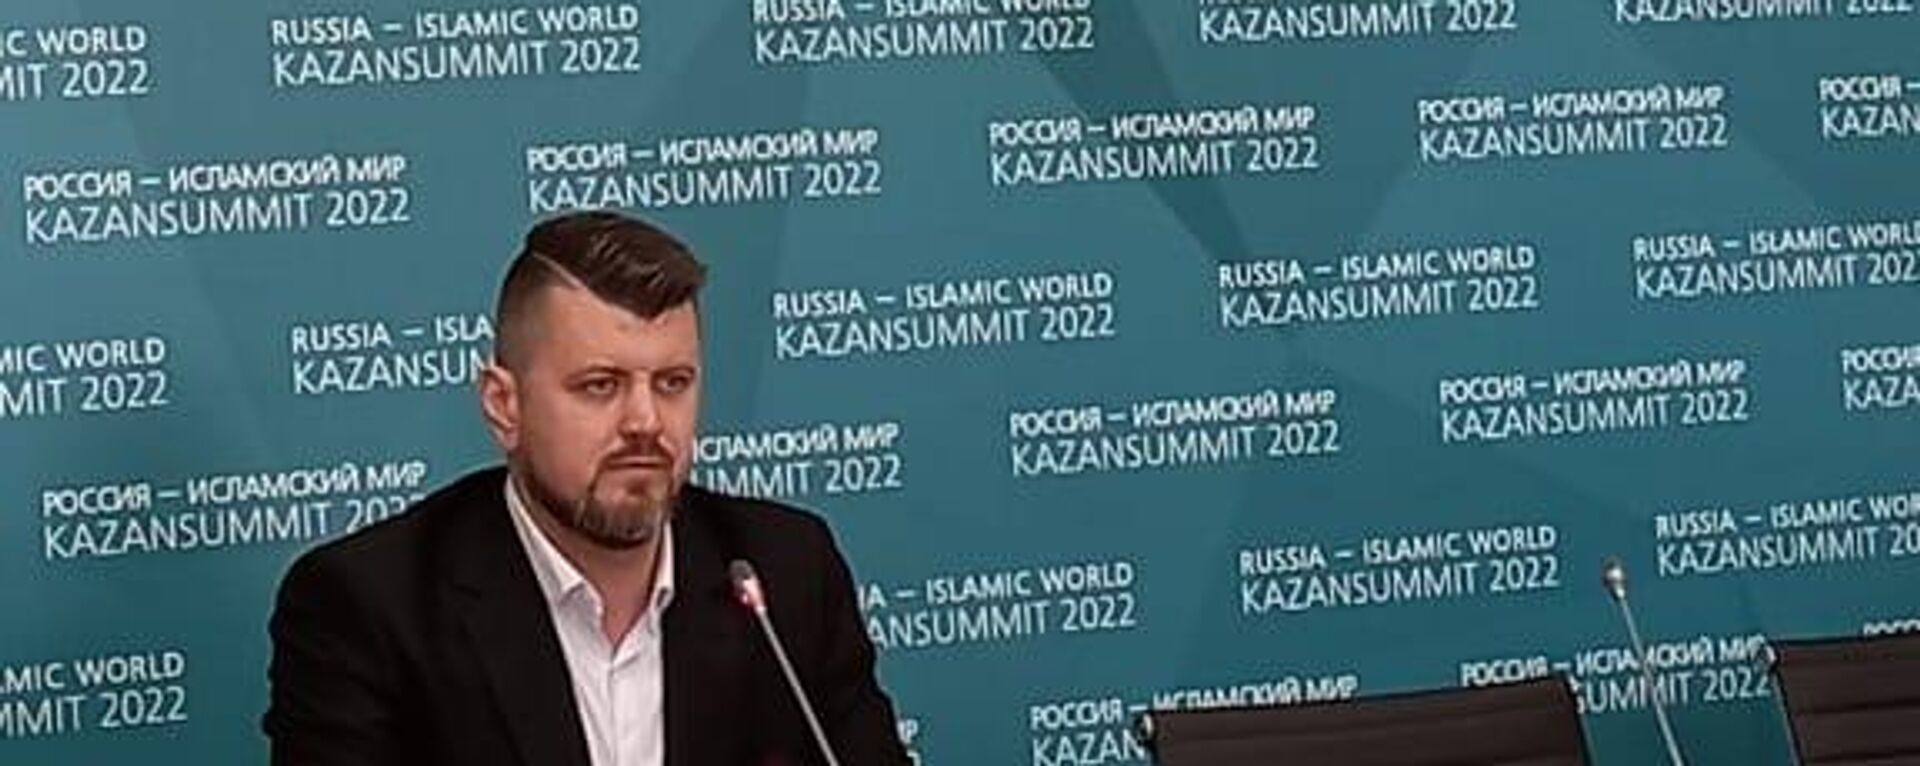 Tataristan’ın başkenti Kazan’da, İslam aleminin en önemli ekonomik olaylarından biri olan uluslararası Rusya-İslam Alemi: KazanSummit 2022 forumu başladı.  - Sputnik Türkiye, 1920, 20.05.2022